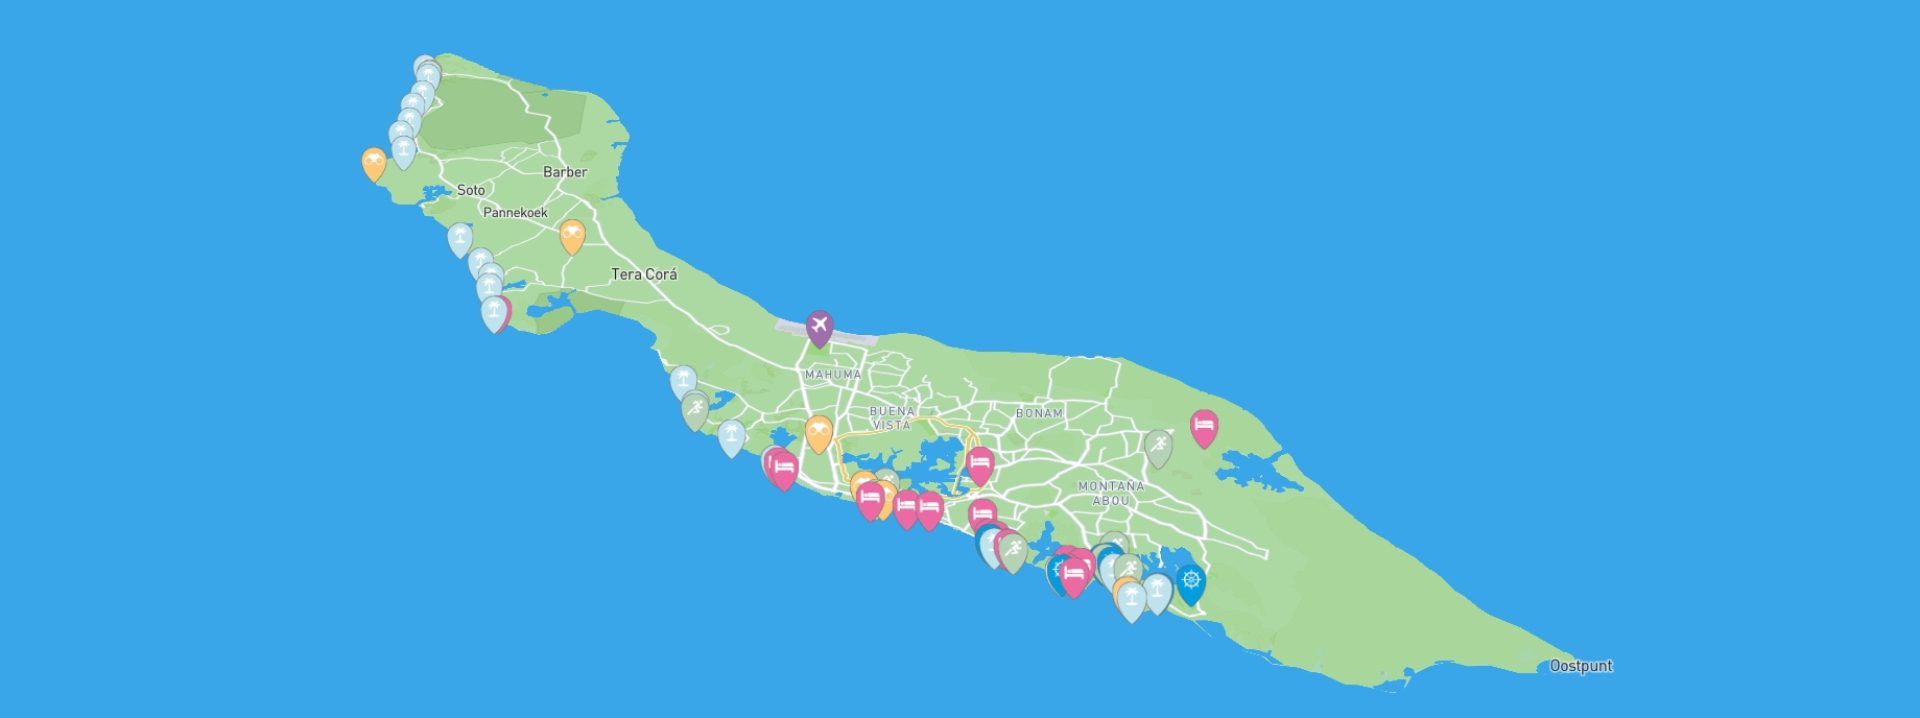 mapa interativo de curaçao